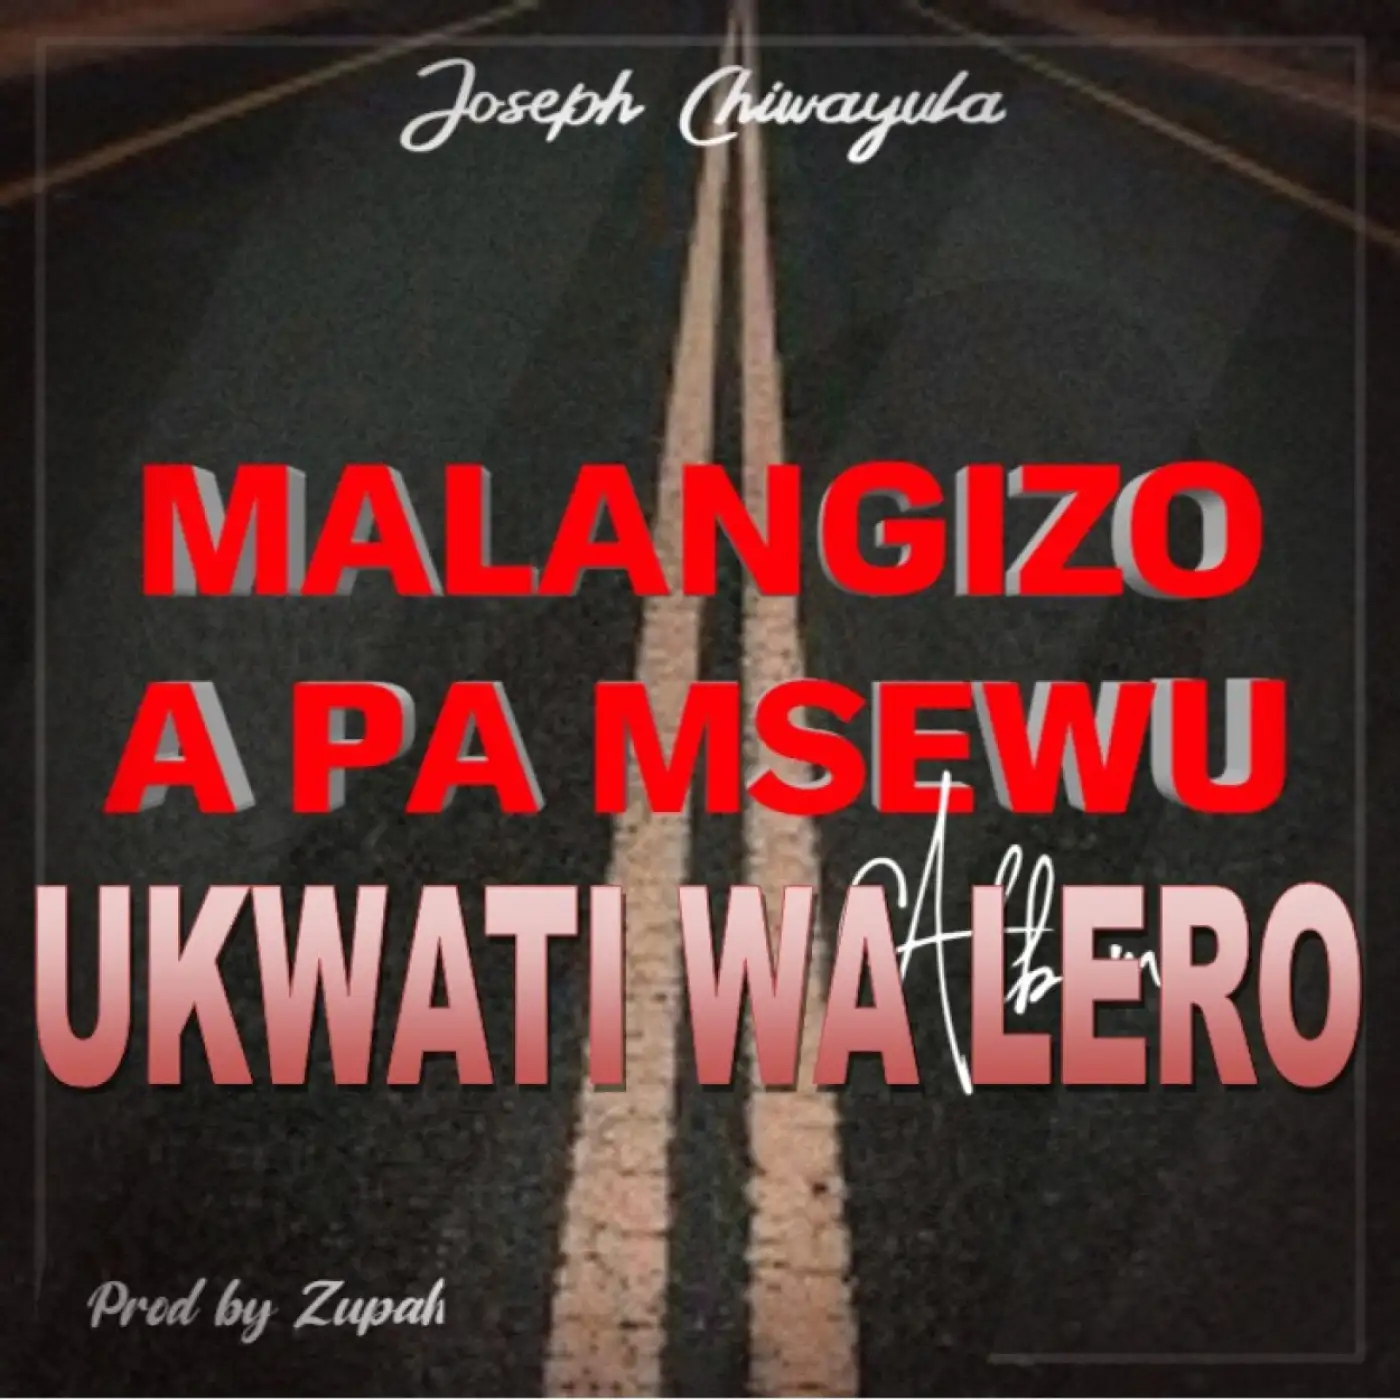 Joseph Chiwayula-Joseph Chiwayula - Ukwati Wa Lero-song artwork cover